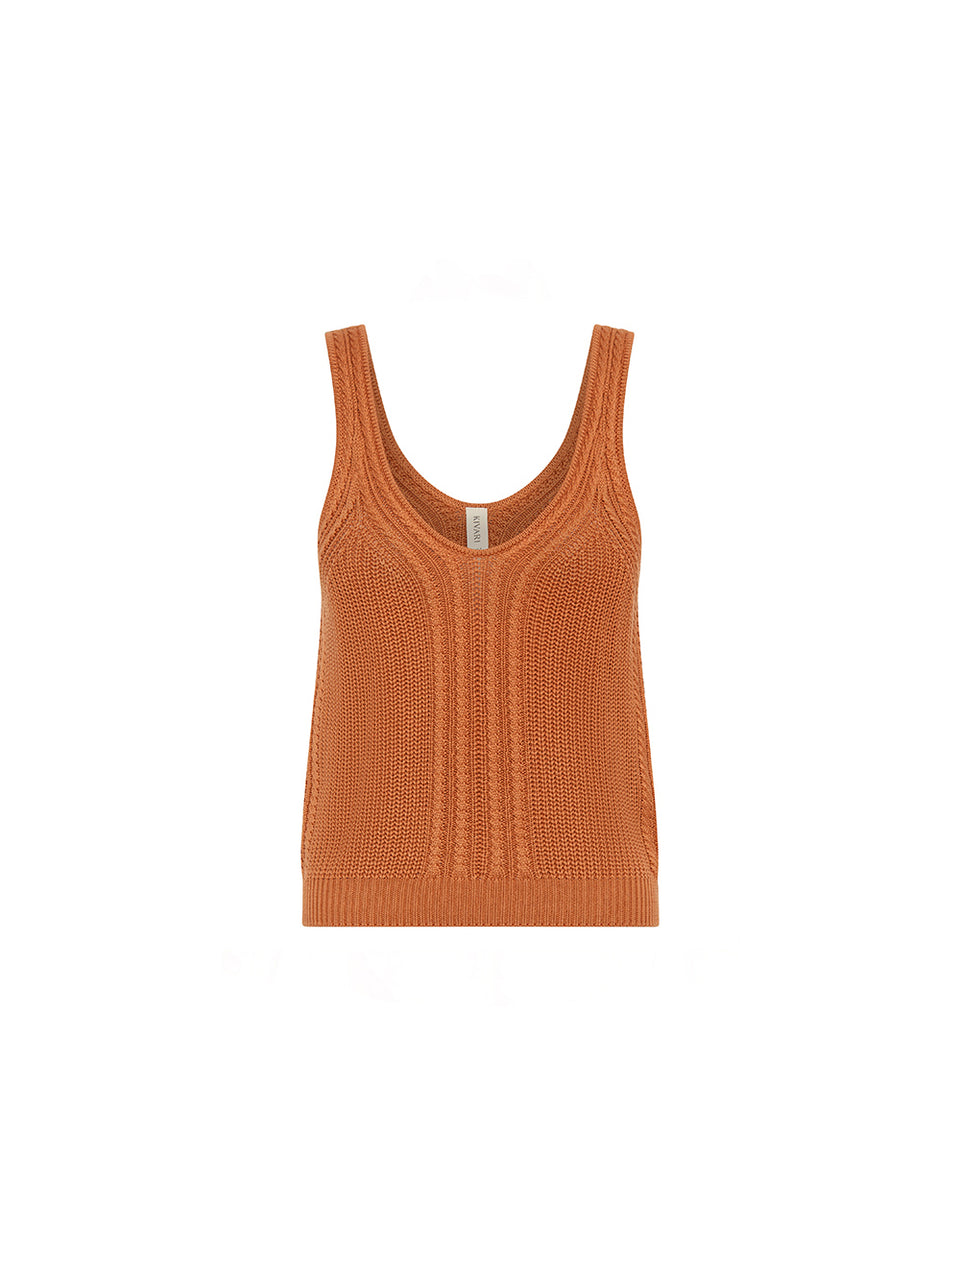 Raven Knit Cami Ginger KIVARI | Orange knit tank top